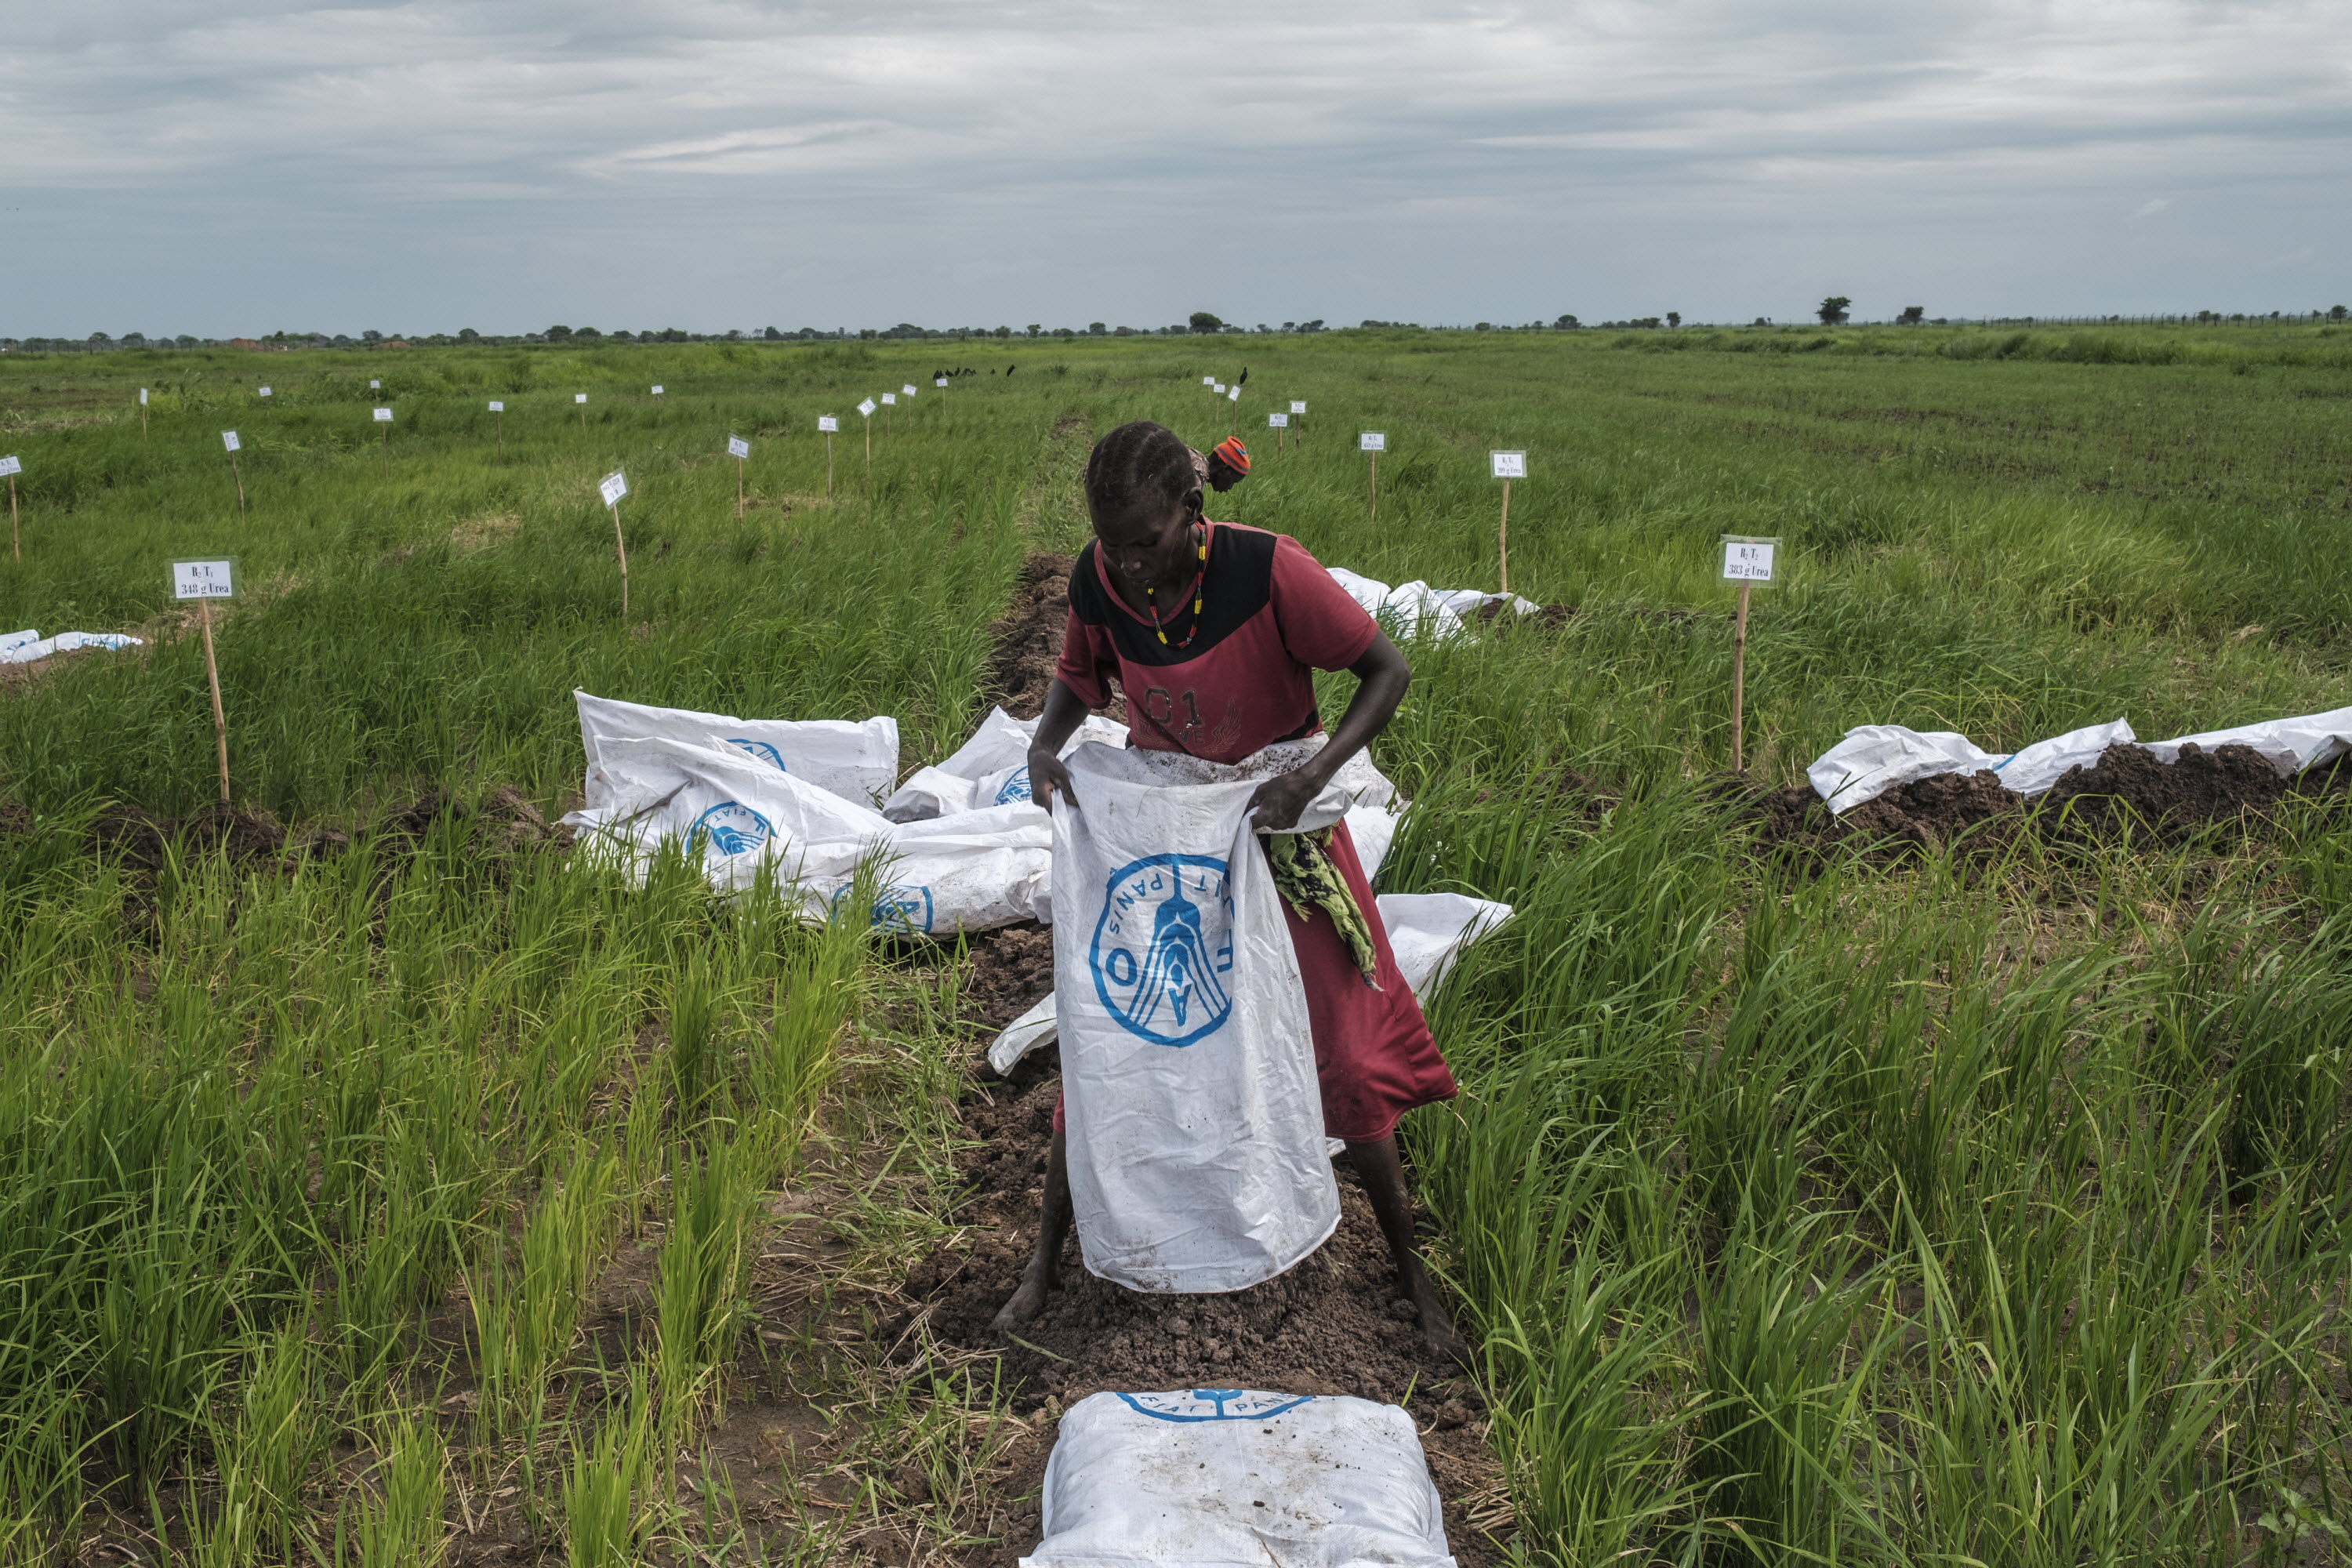 جنوب السودان: تكثف المنظمة جهودها لزيادة قدرة النظم الزراعية والغذائية على  الصمود بوجه التهديدات والأزمات